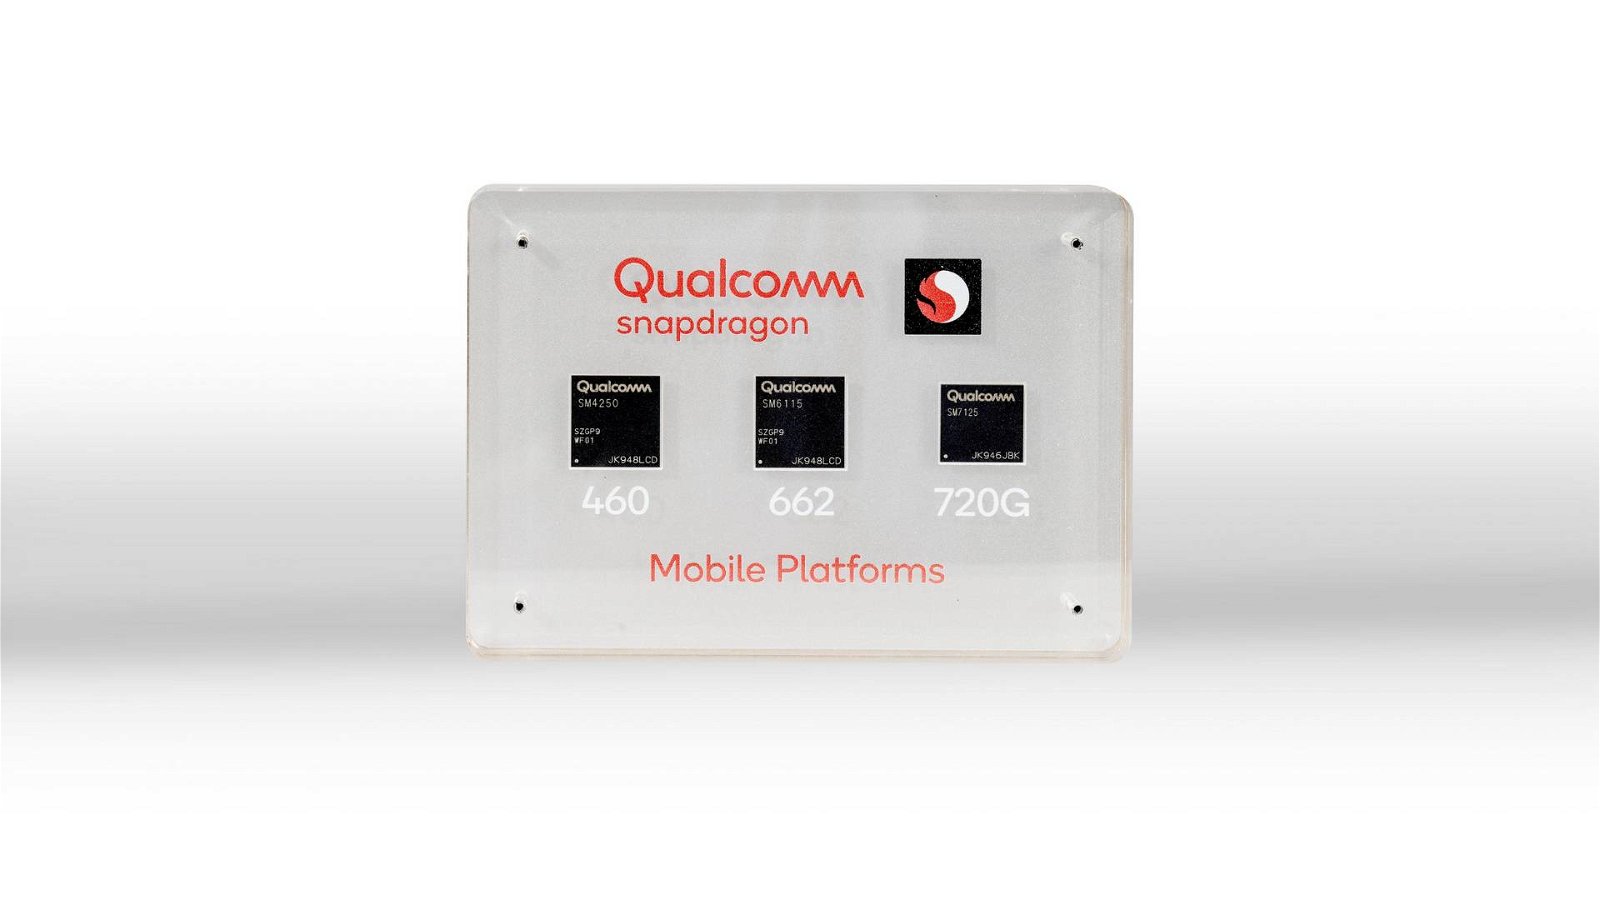 Immagine di Qualcomm annuncia Snapdragon 720G, 662 e 460: la fascia medio-bassa si rinnova